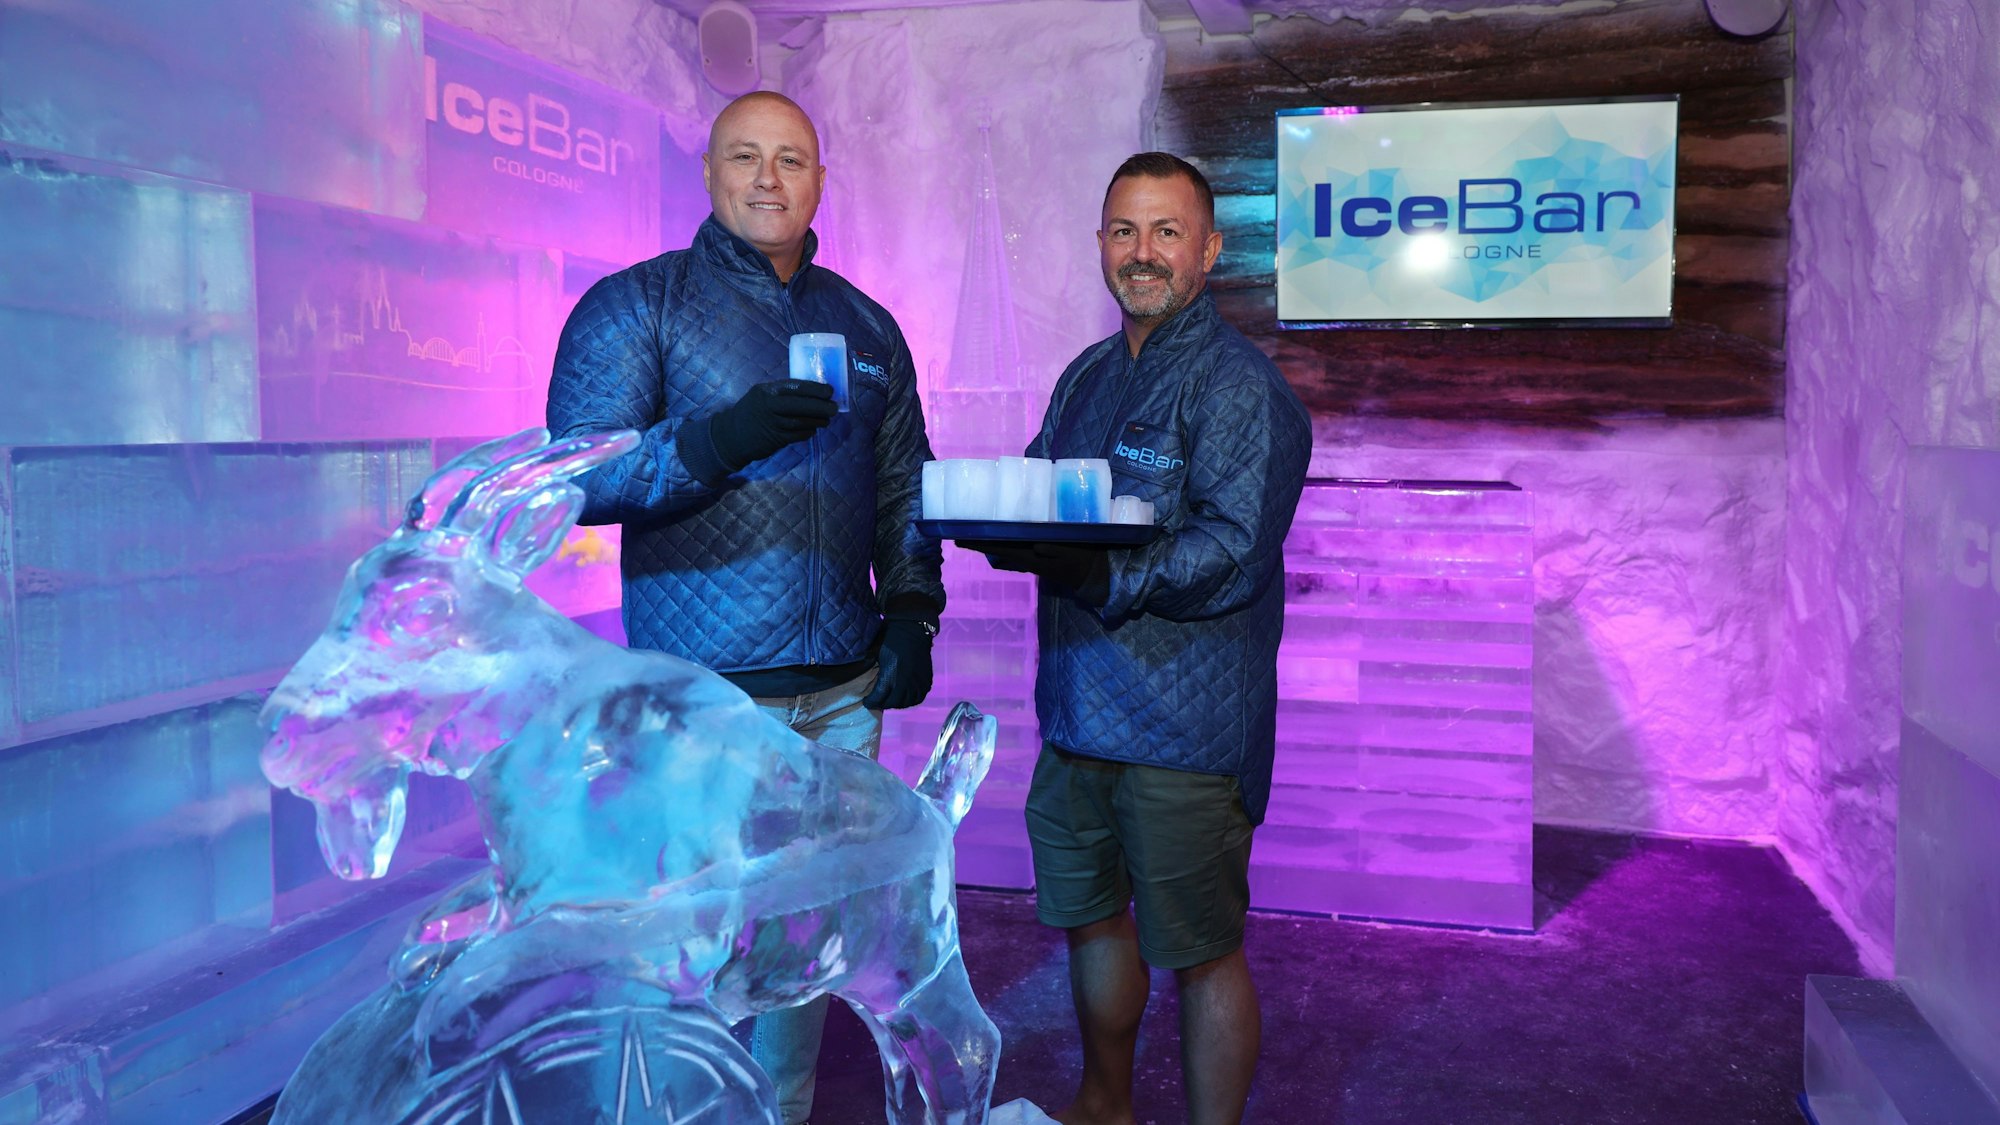 Die beiden Besitzer Markus Weiss und Stefano Straberg in ihrer „Ice Bar Cologne“

